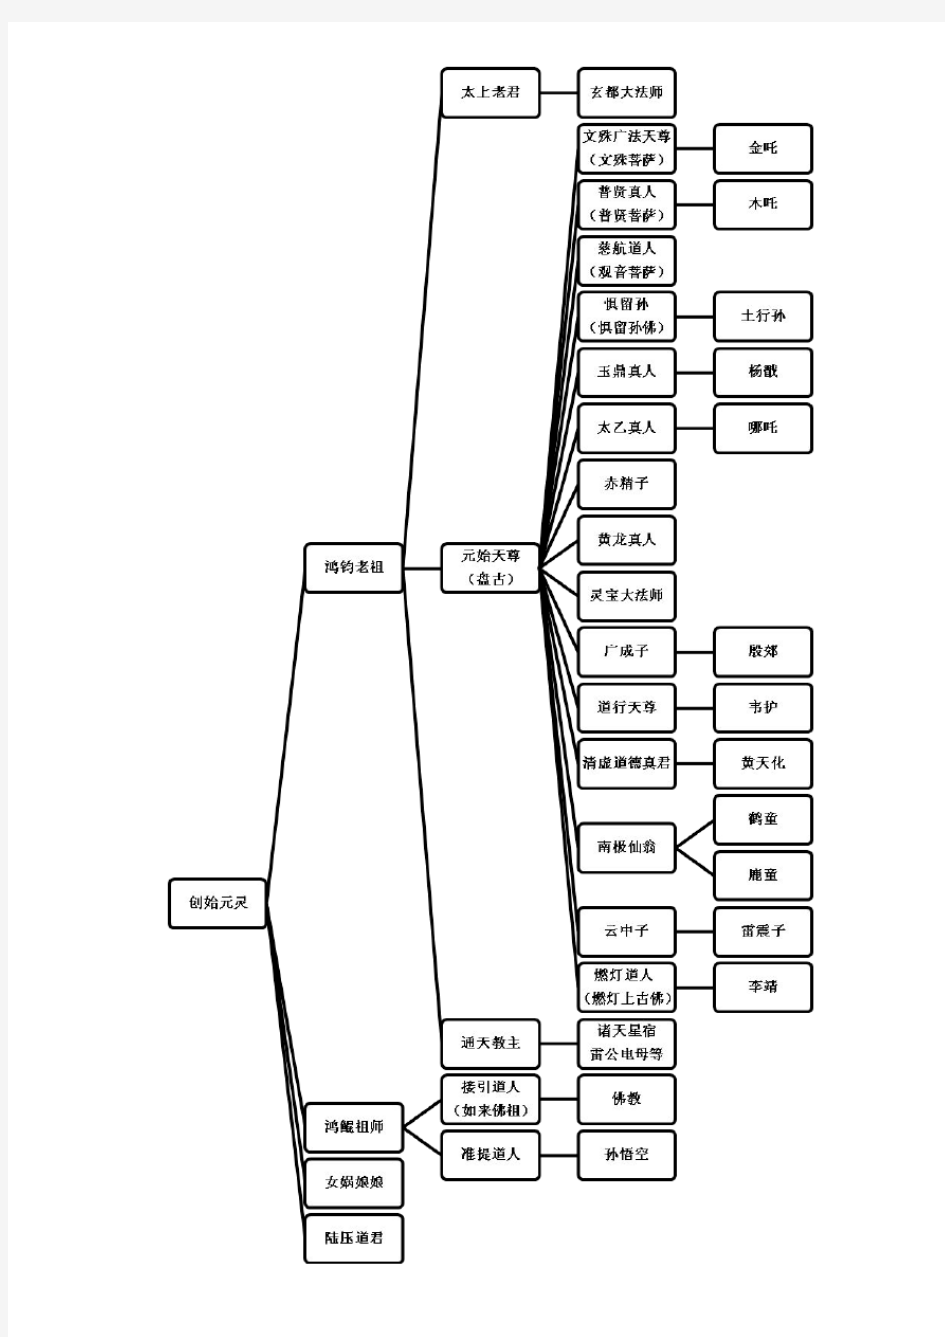 中国古代神仙体系(组织结构图)